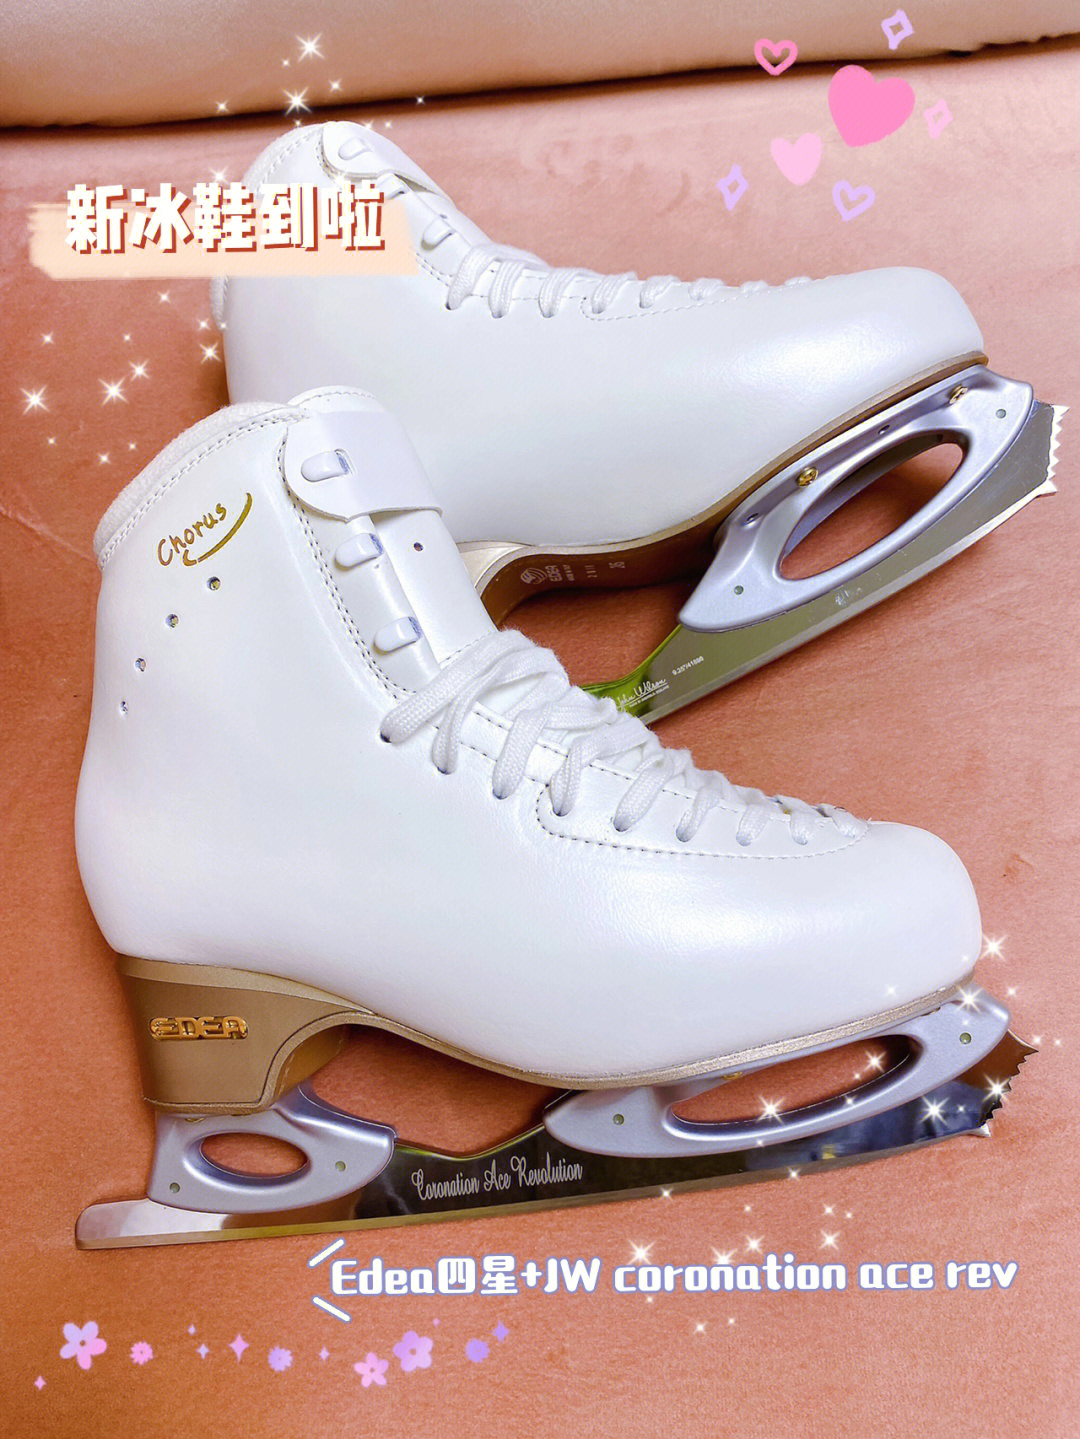 上海edea冰鞋实体店图片